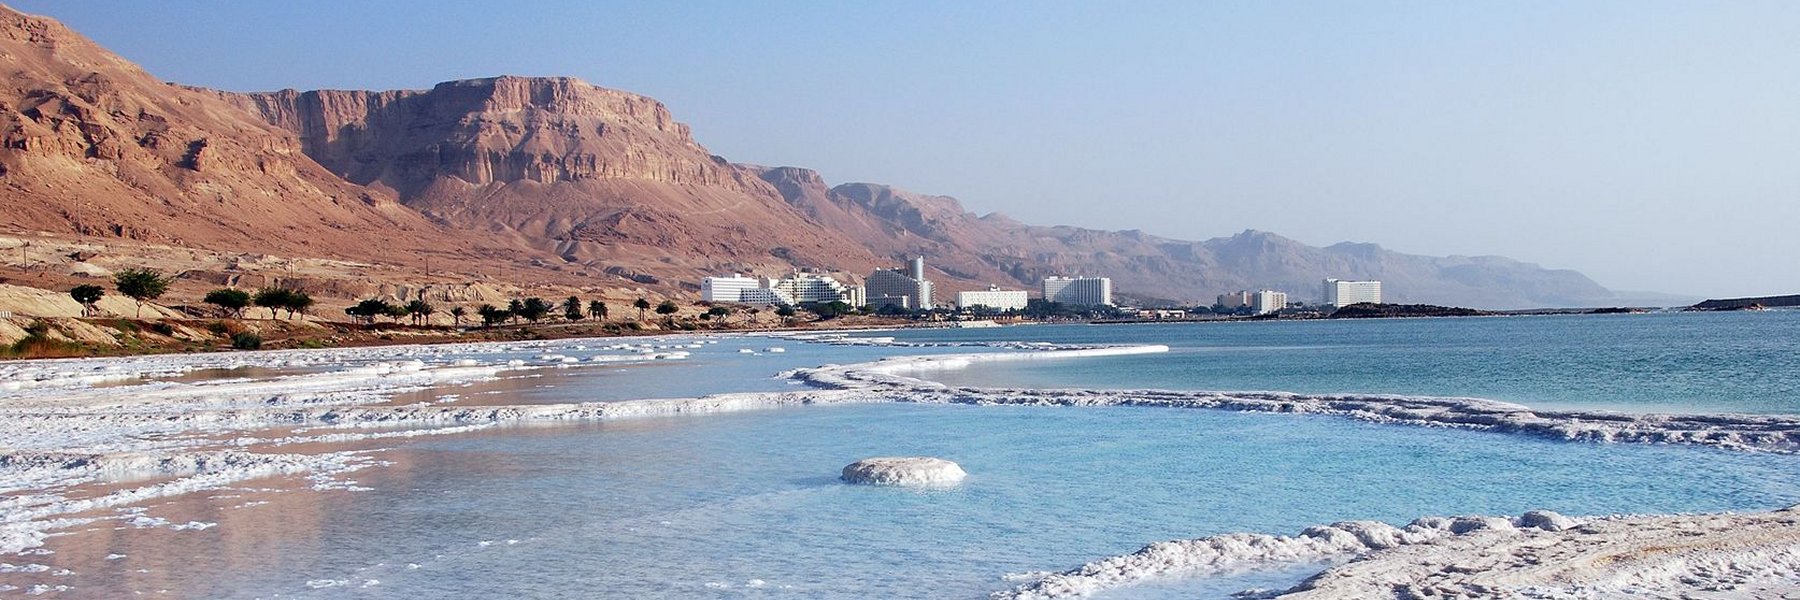 Gesundheit, Wellness und Schönheit am Toten Meer